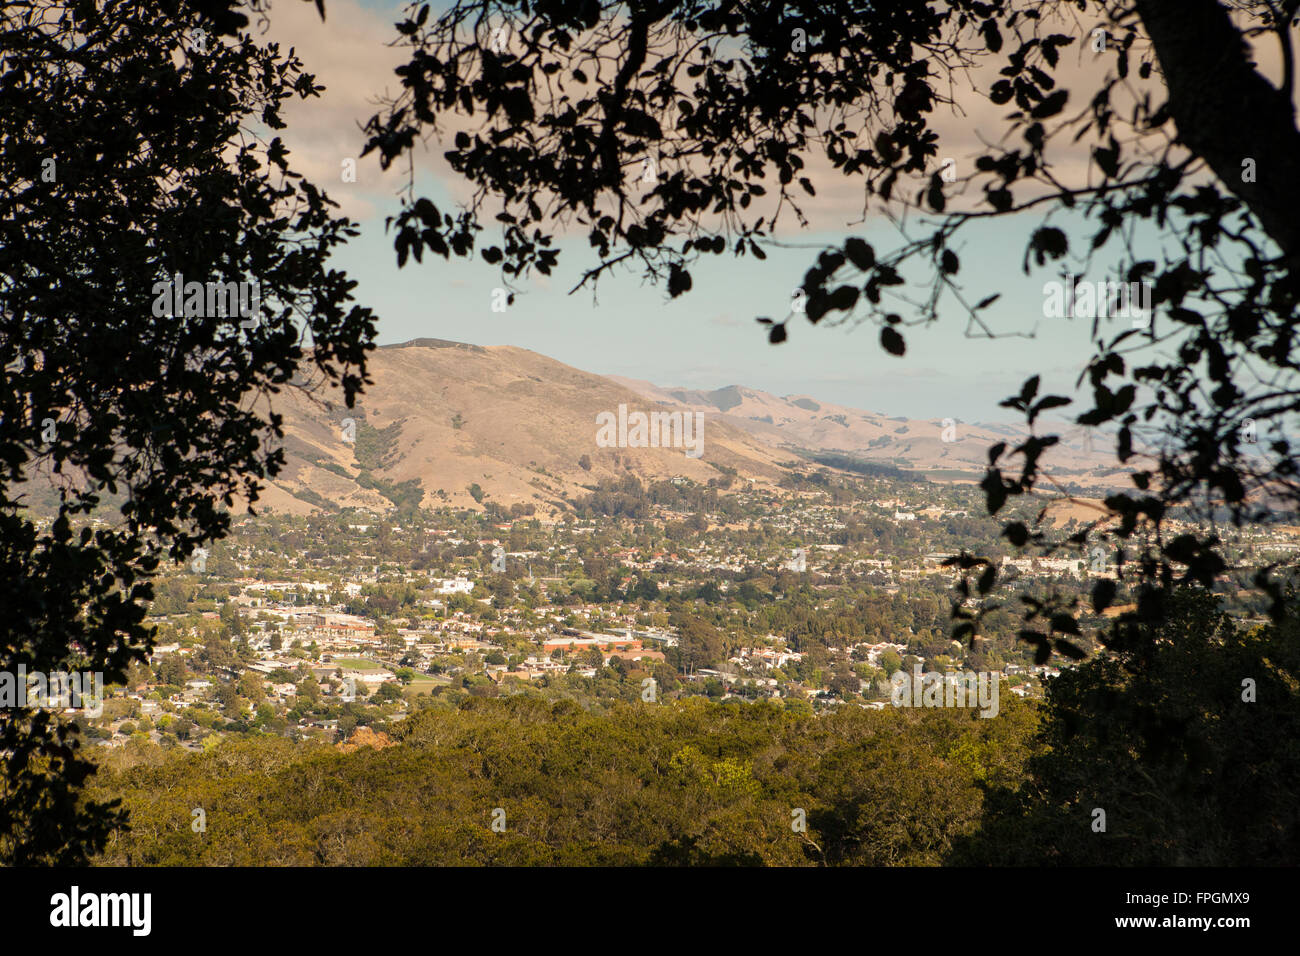 Vista de San Luis Obispo Mons Pico, San Luis Obispo, California Foto de stock